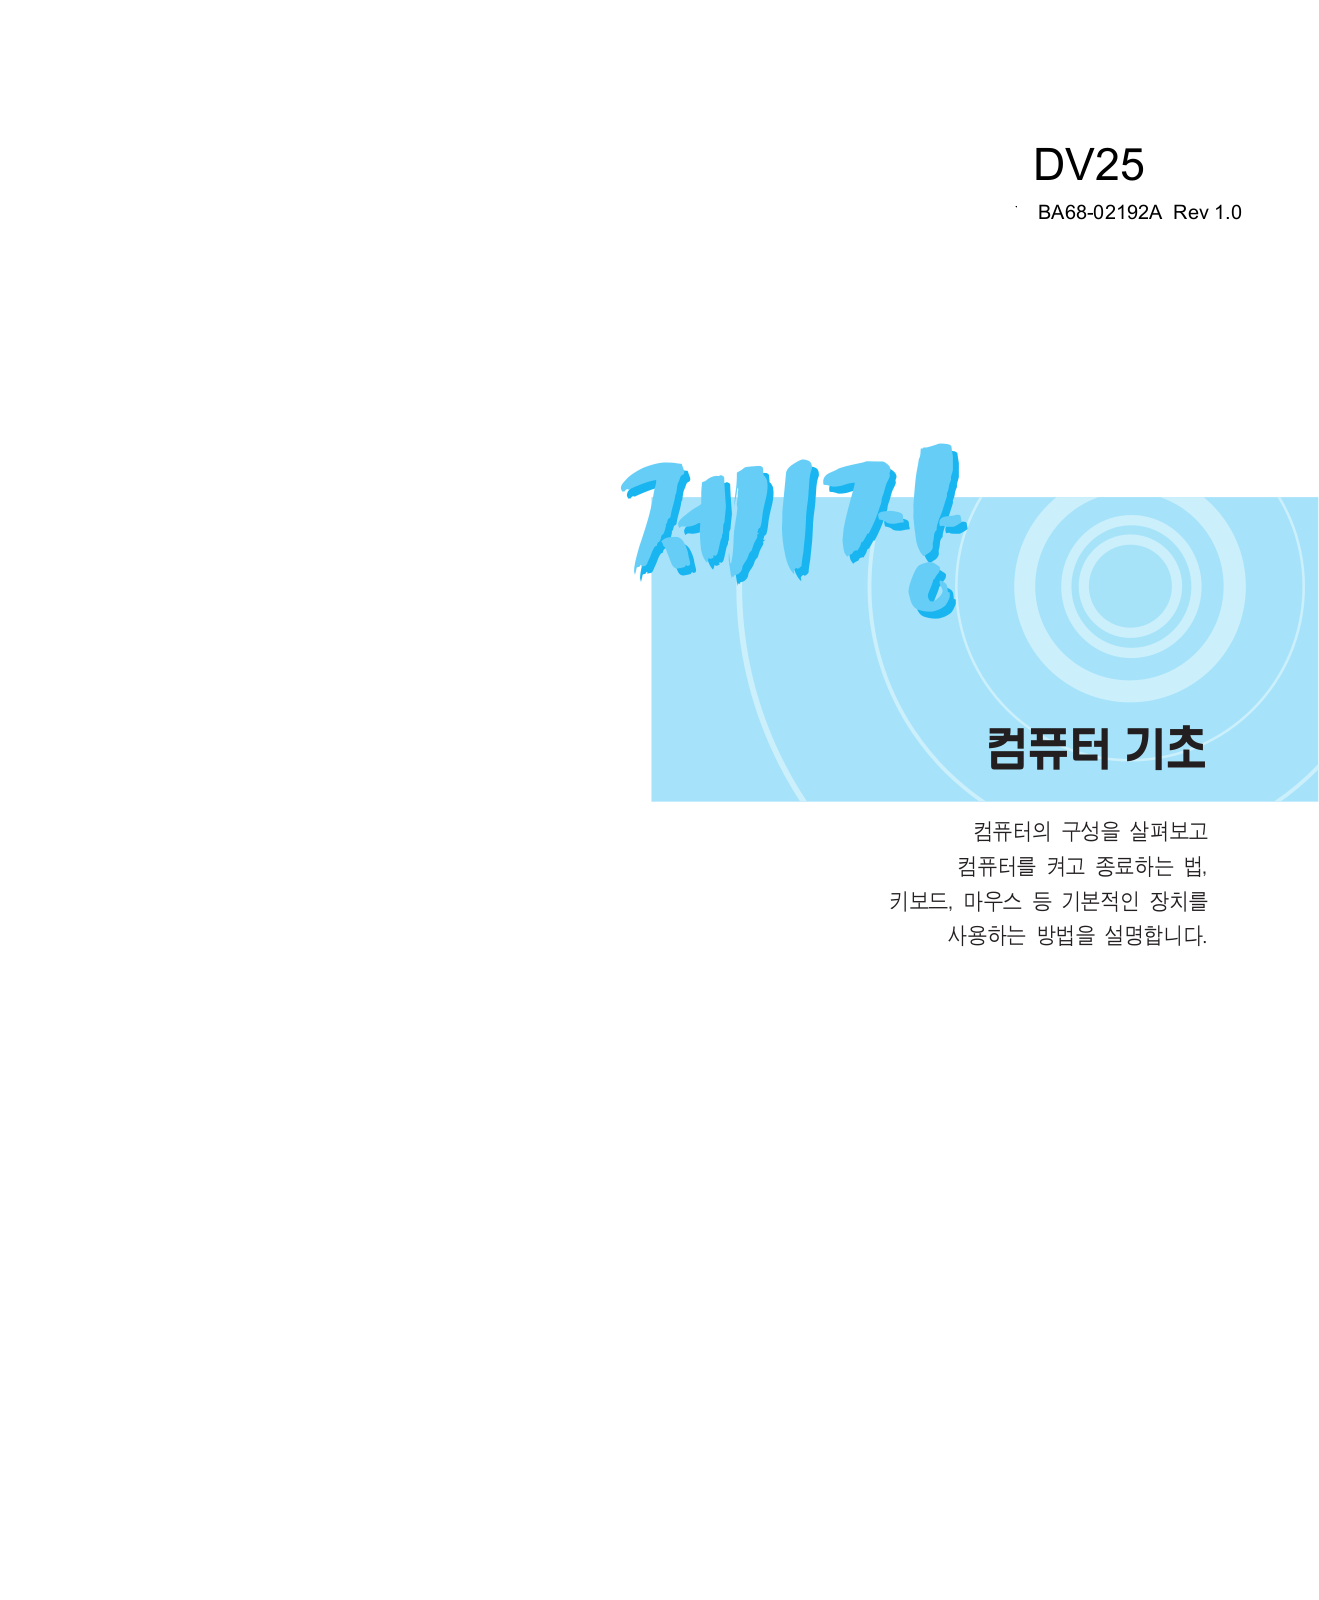 Samsung DV25 User Manual